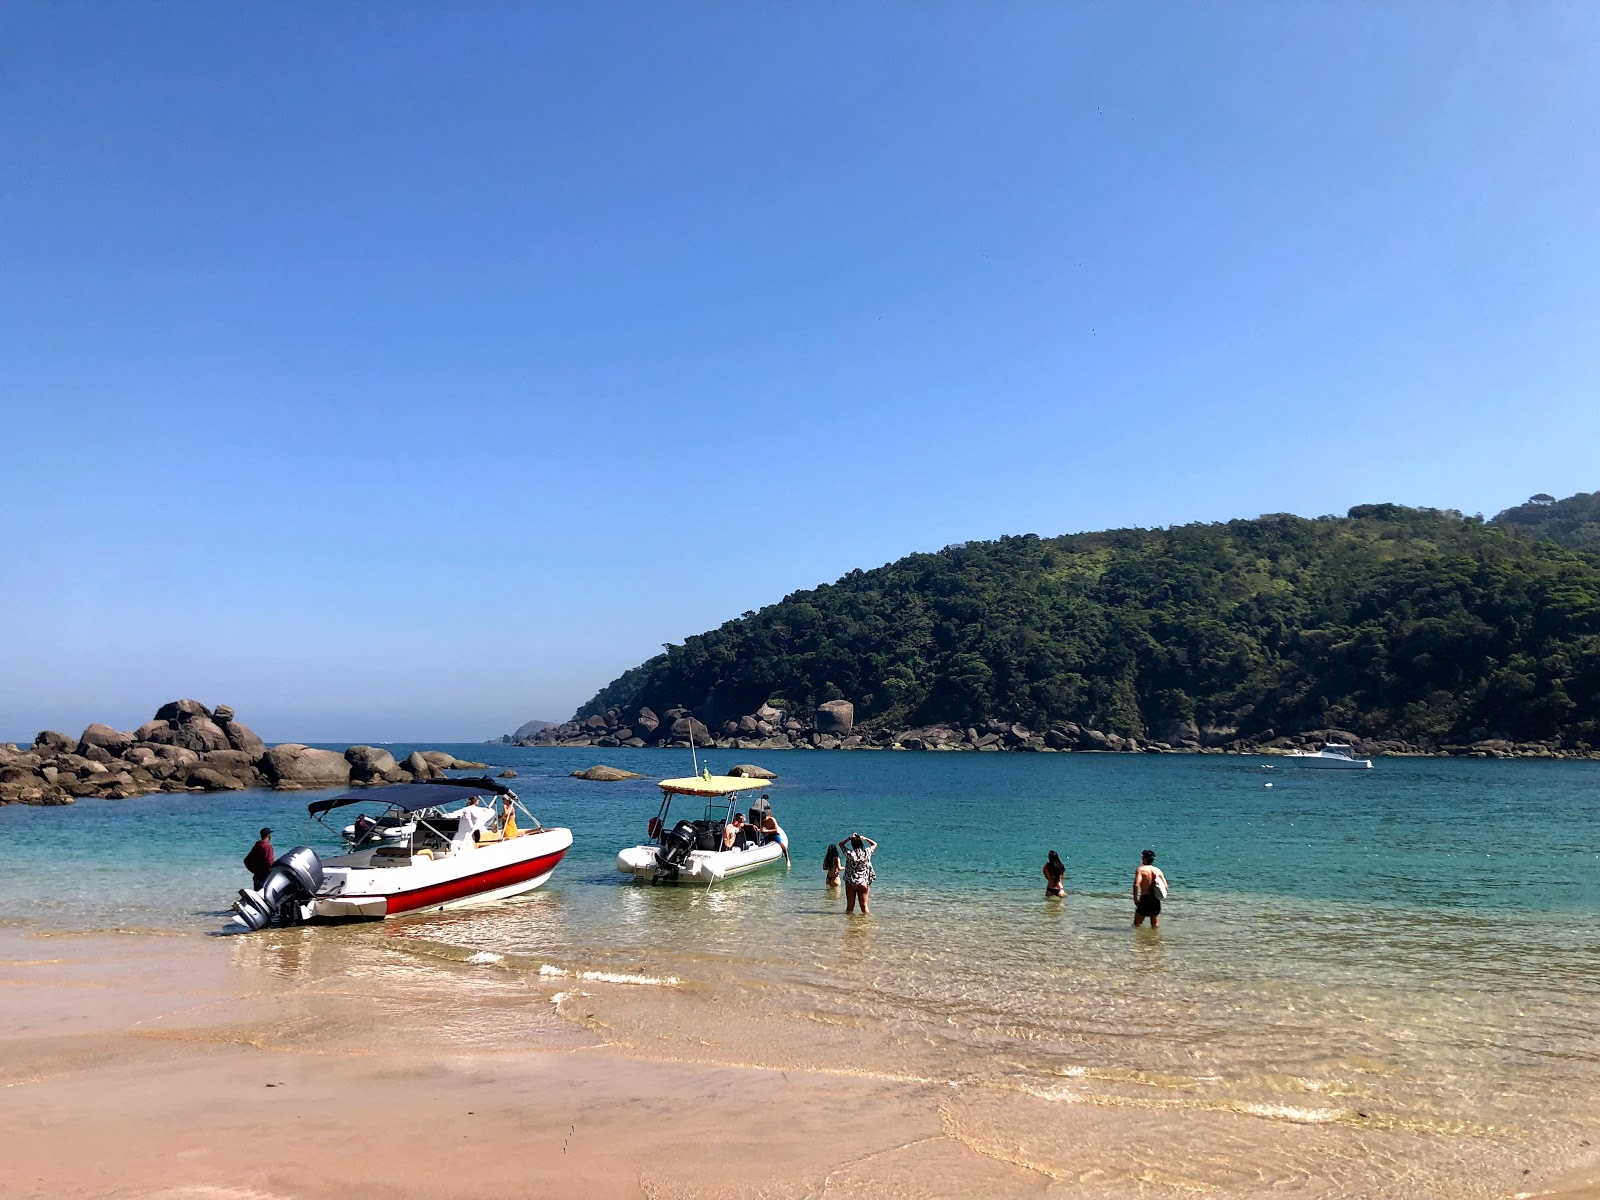 Foto af Praia de Indaiauba - populært sted blandt afslapningskendere